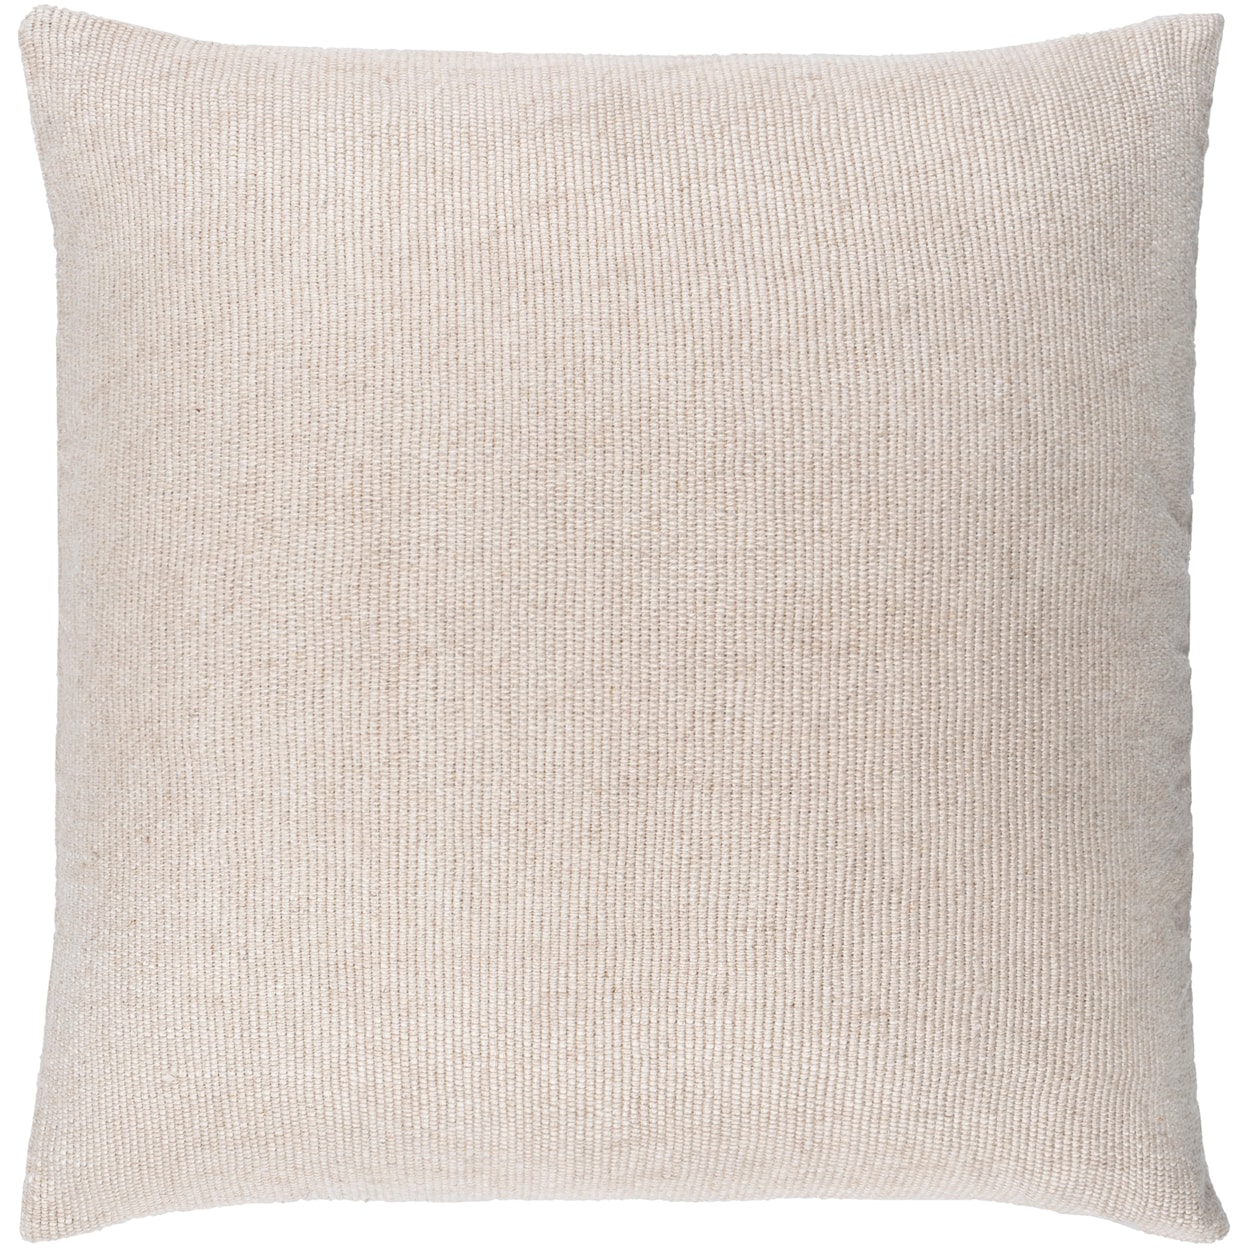 Ruby-Gordon Accents Sallie Pillow Kit